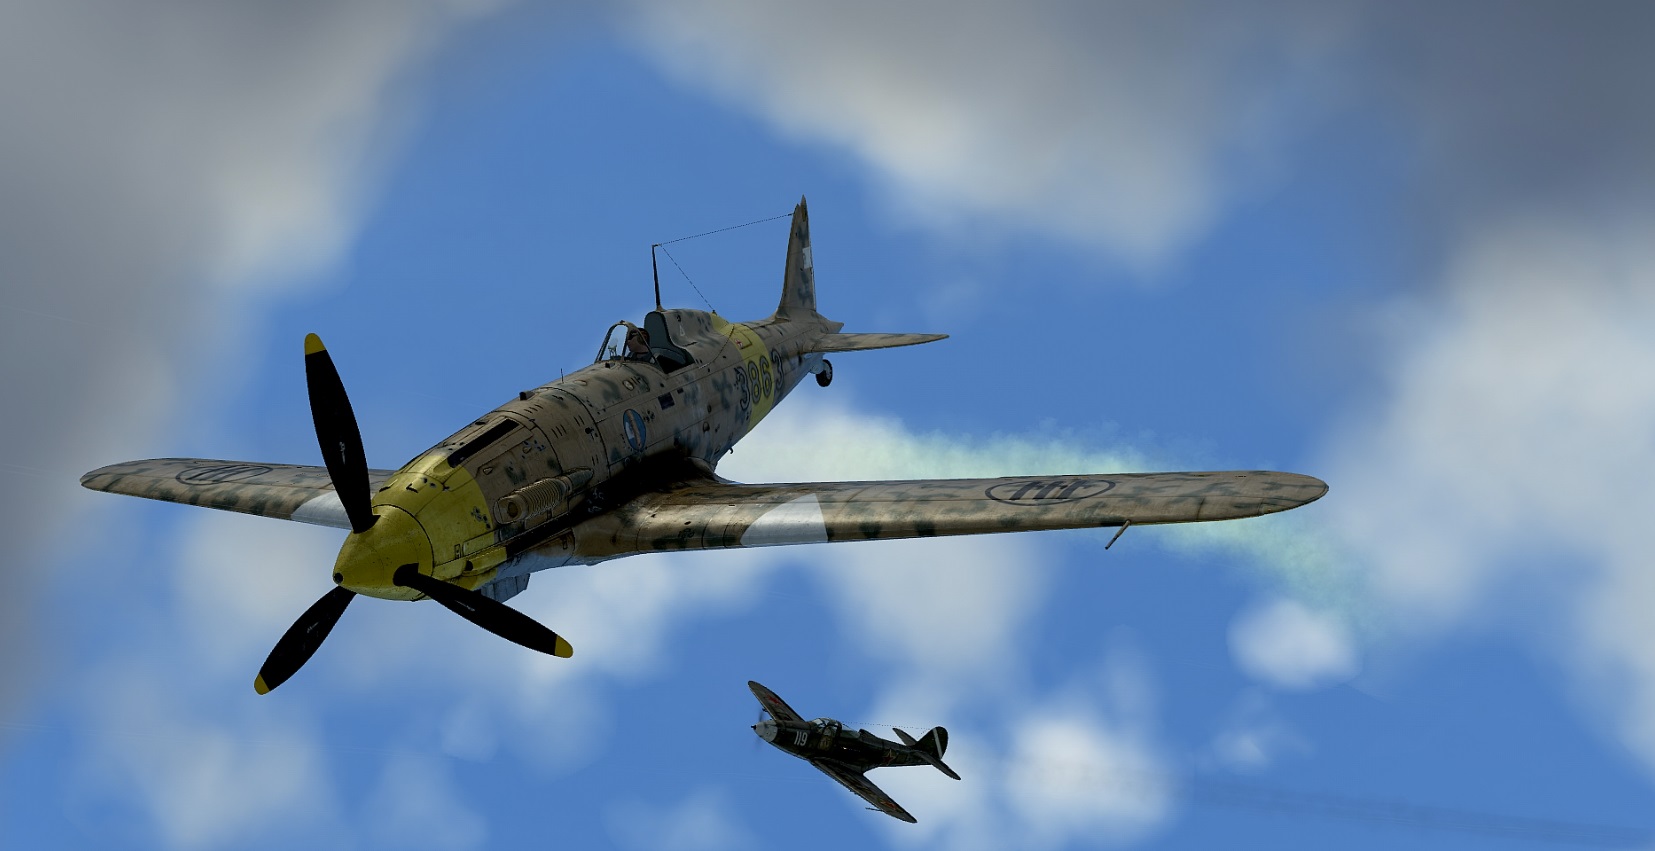 Bell P-39 Airacobra против , против Macchi C.202 Folgore. Выбил двигатель в лобовой атаке.